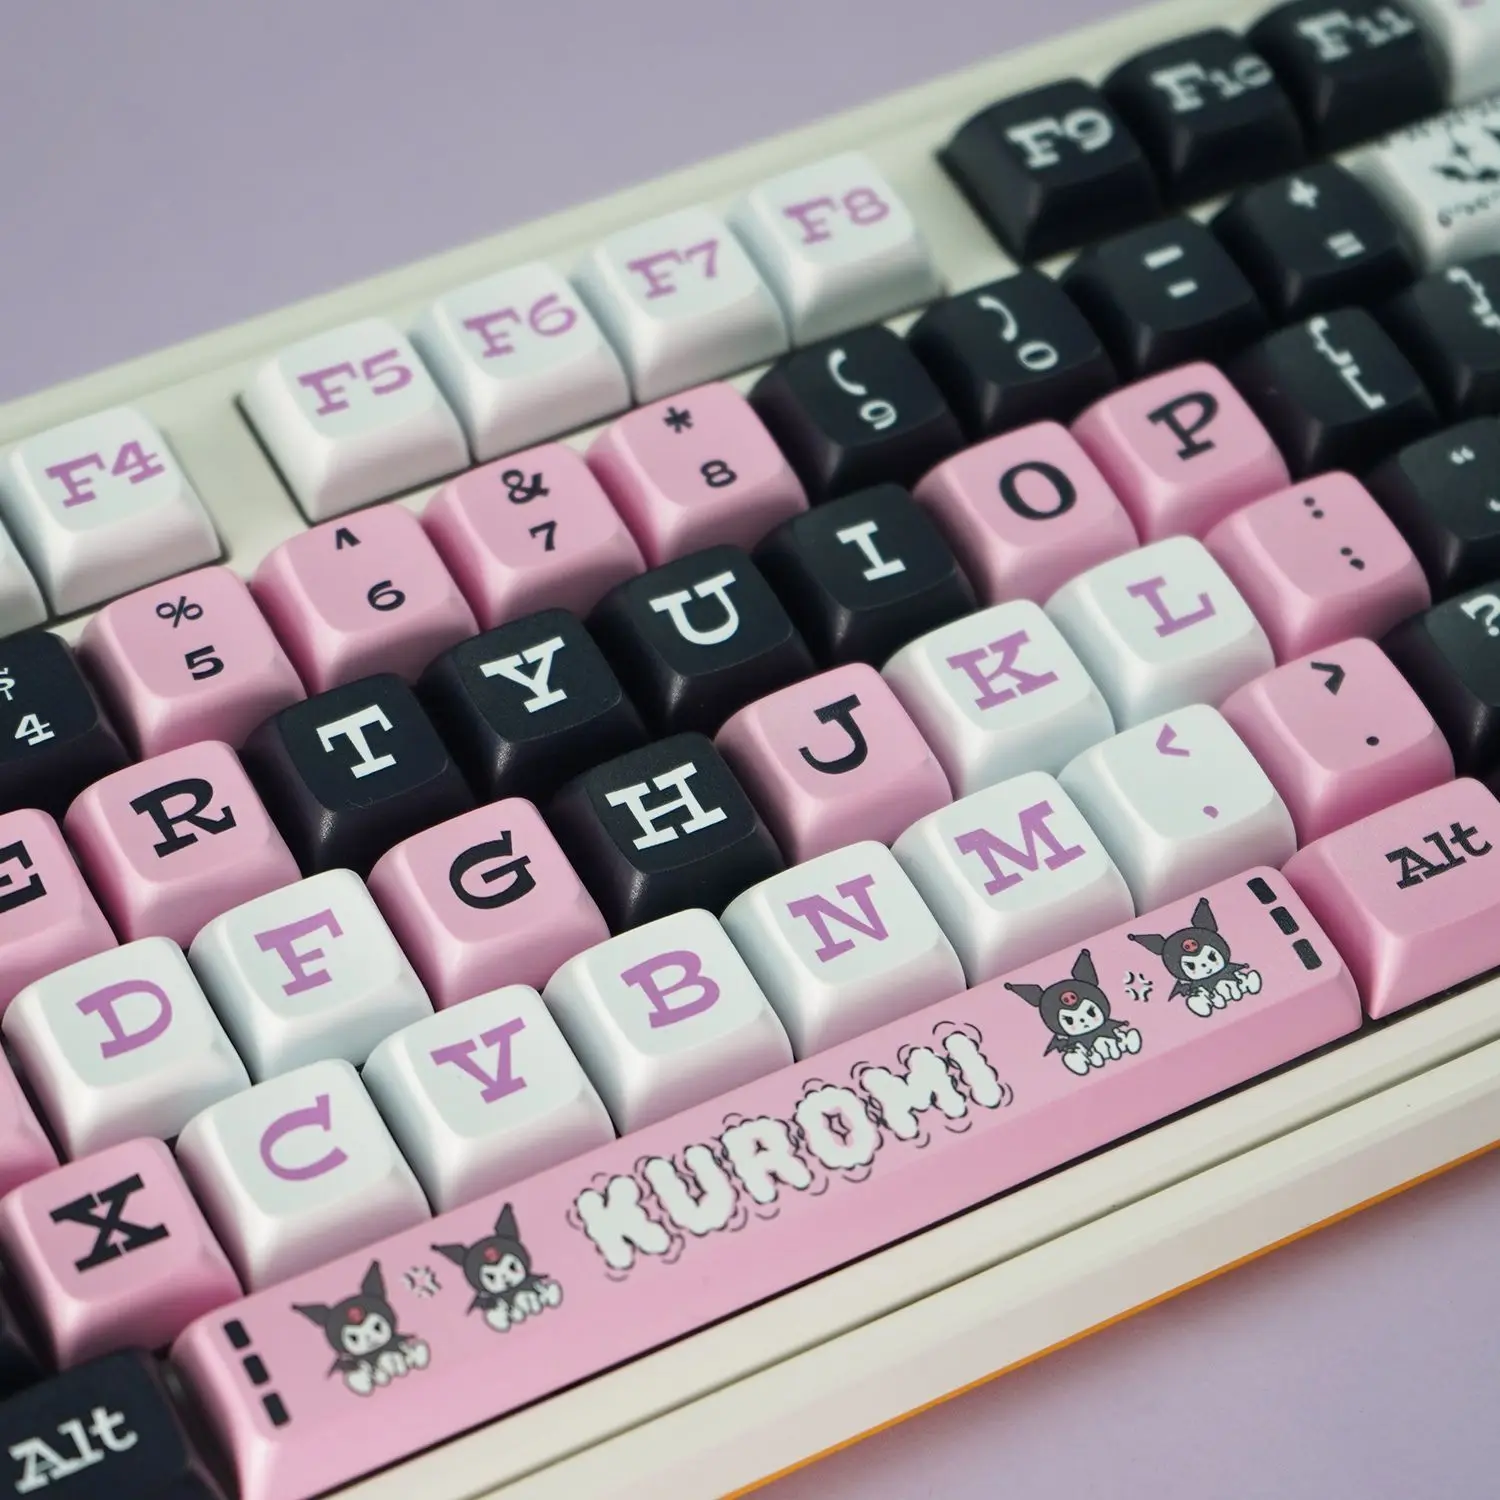 

127 клавиш Kuromid Keycaps граффити черный розовый XDA профиль PBT Материал сублимационный процесс для Keycap механическая клавиатура